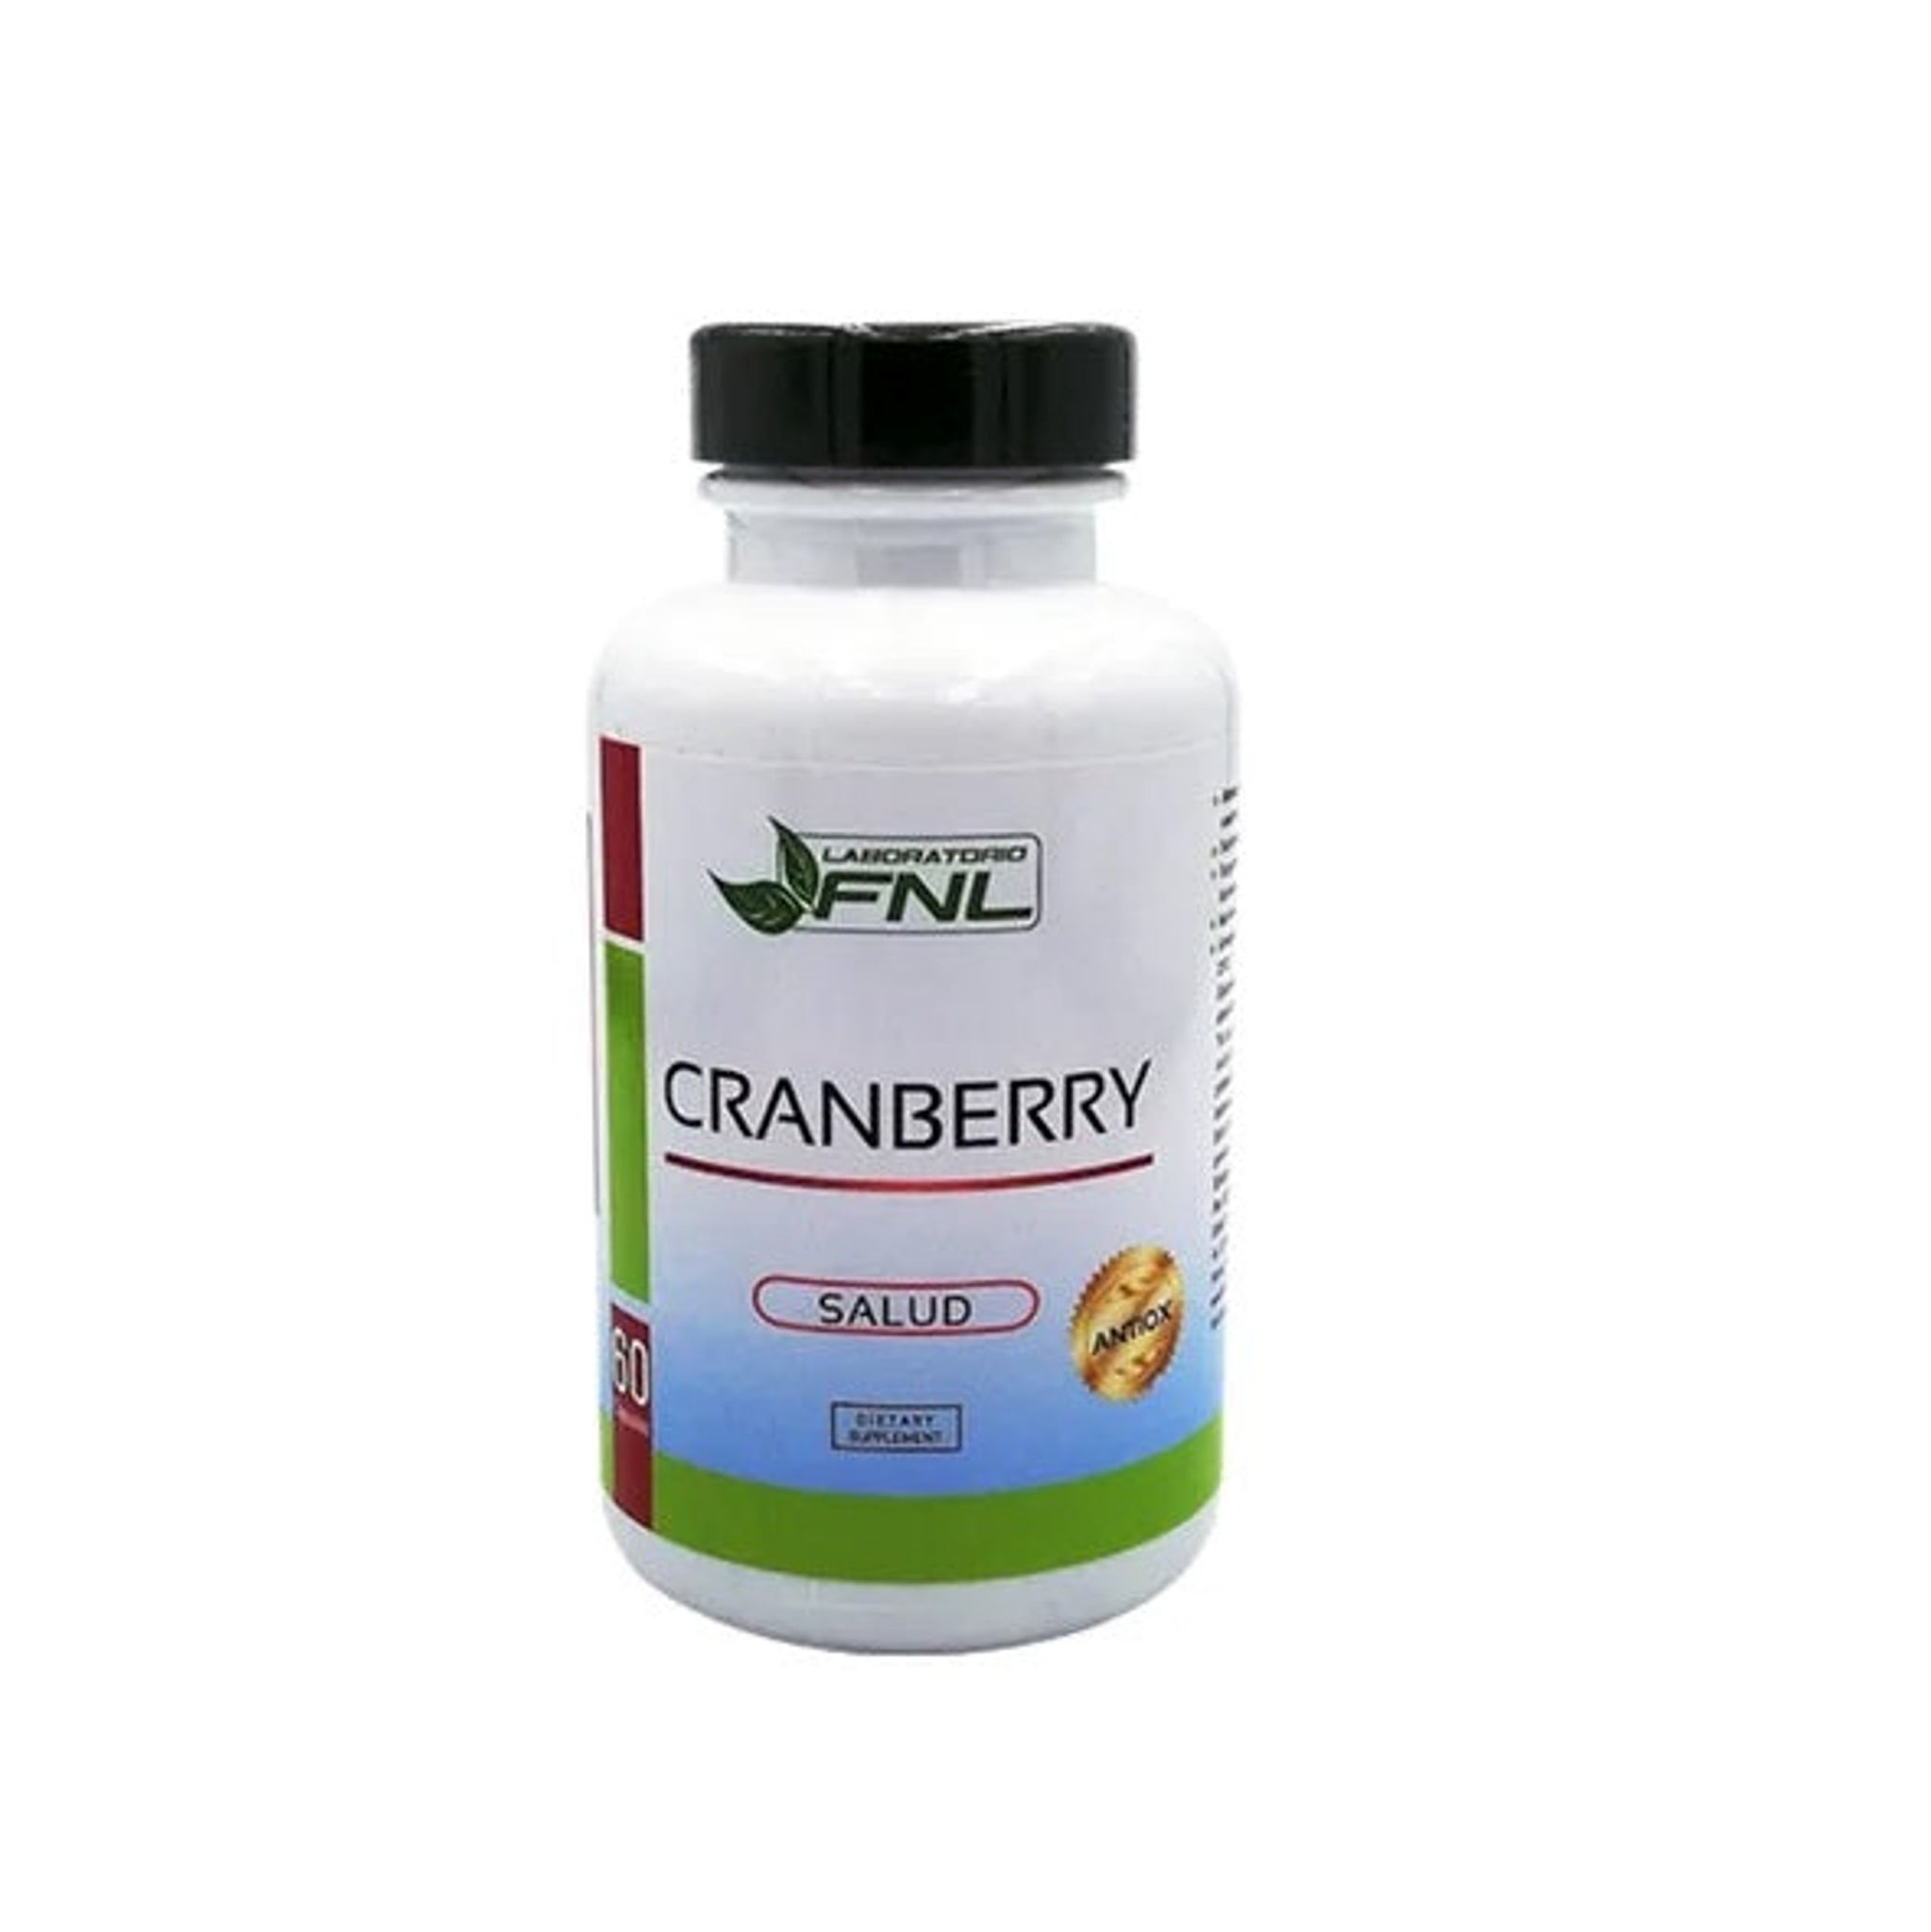 Cranberry en capsulas de 500 mg, 60 Cap, marca FNL